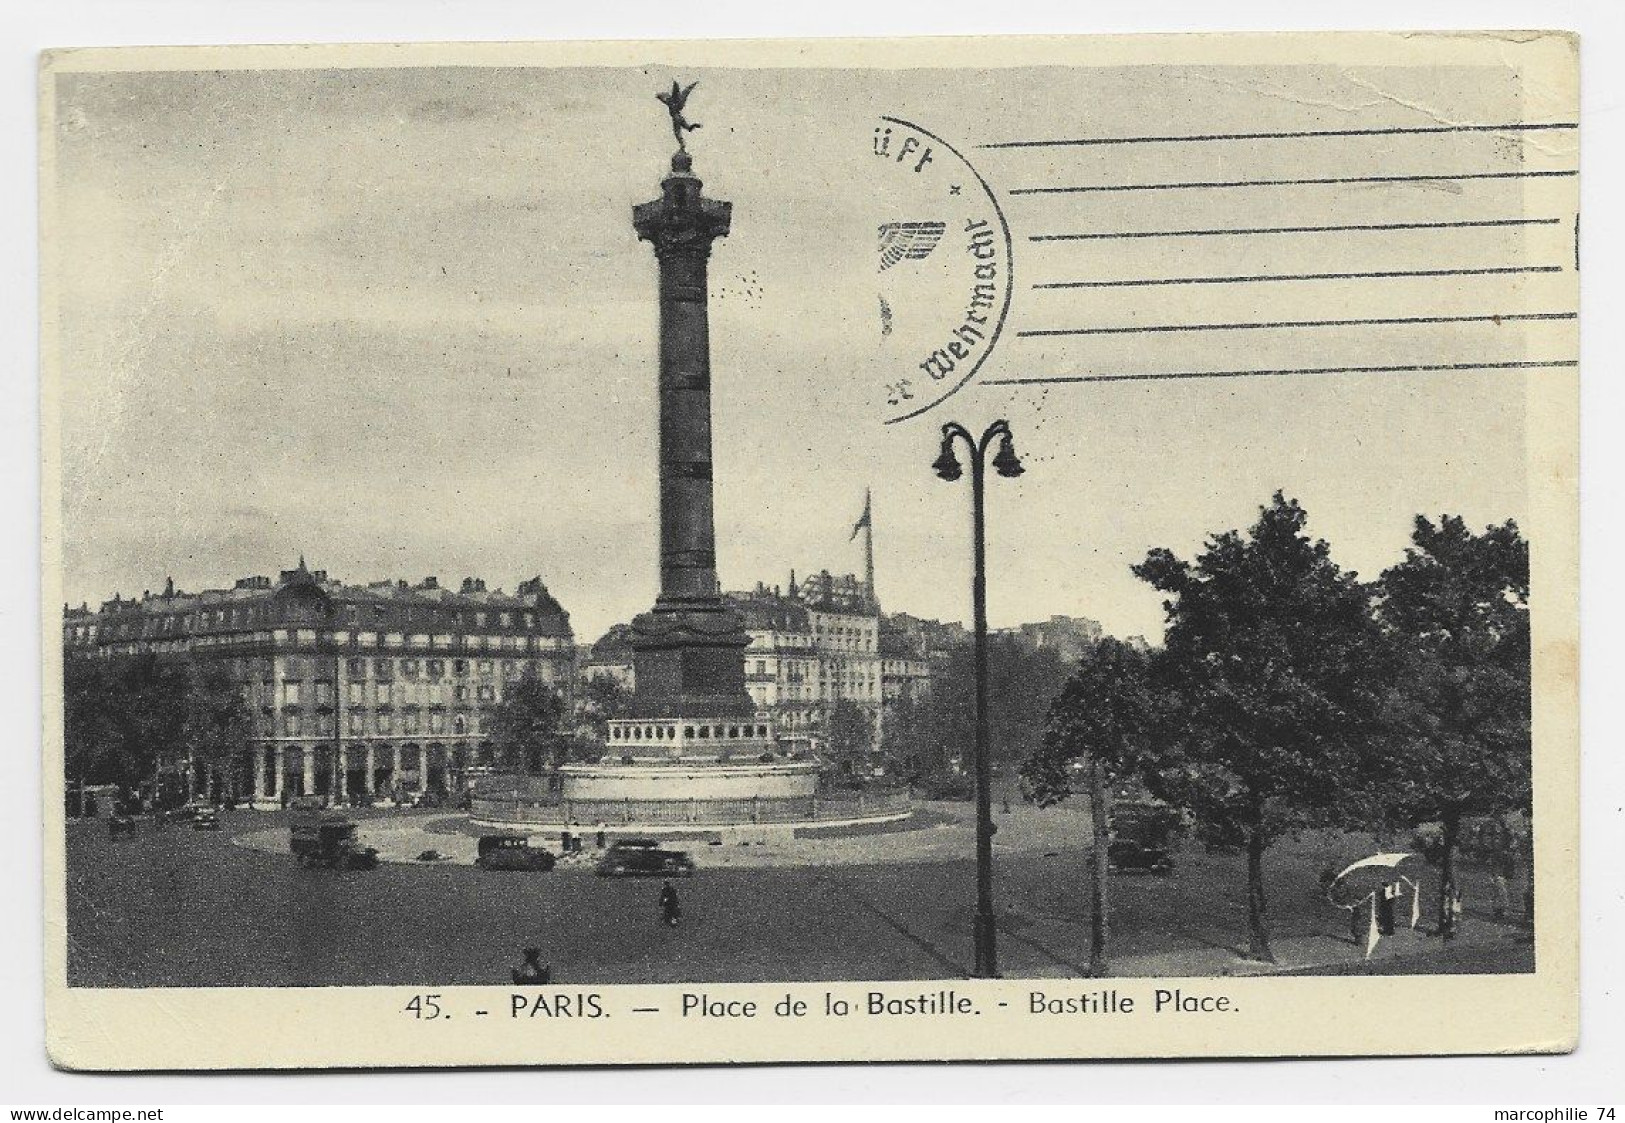 FRANCE CARTE EN FM DE PARIS 19.X.1940 ADRESSEE SUISSE CAMP MILITAIRE INTERNEMENT THORIGEN BERNE SUISSE + FELPOST CENSURE - Poststempel